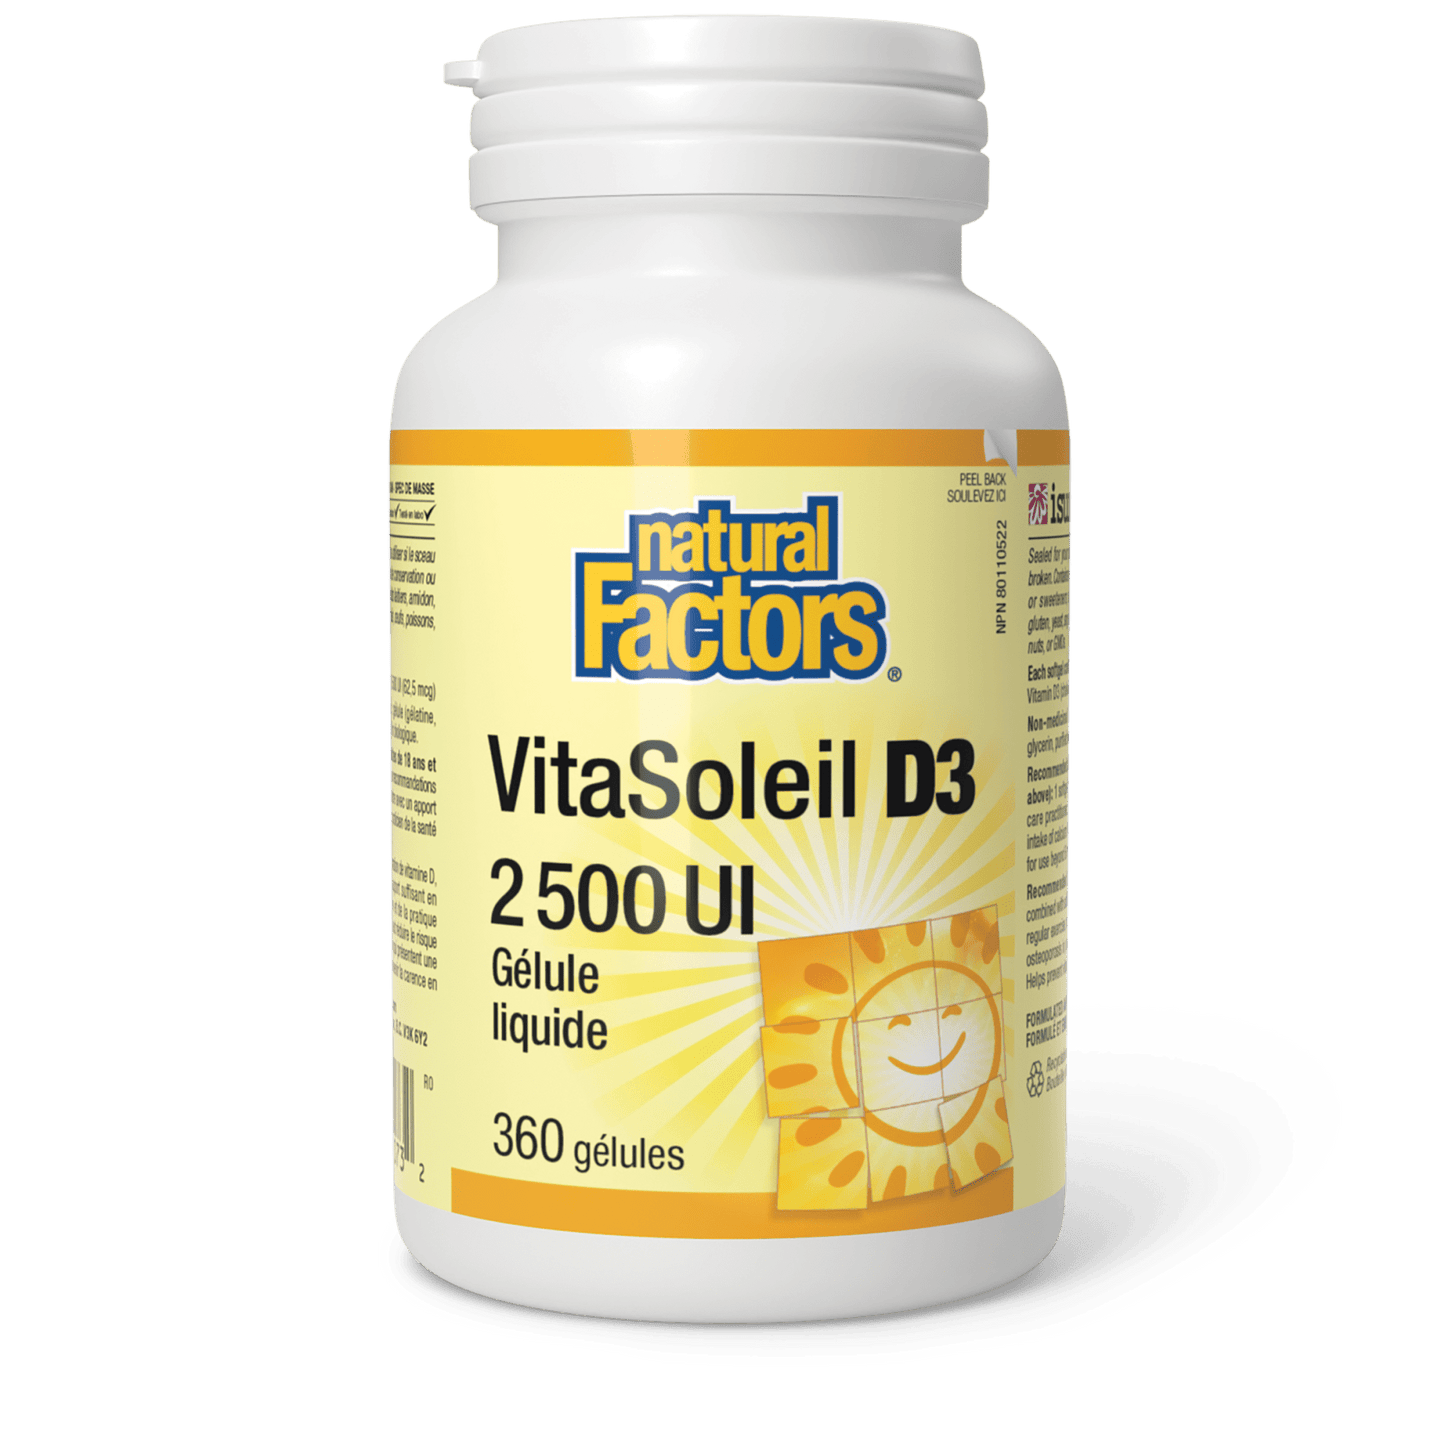 VitaSoleil D3 gélules 2 500 UI, Natural Factors|v|image|1073